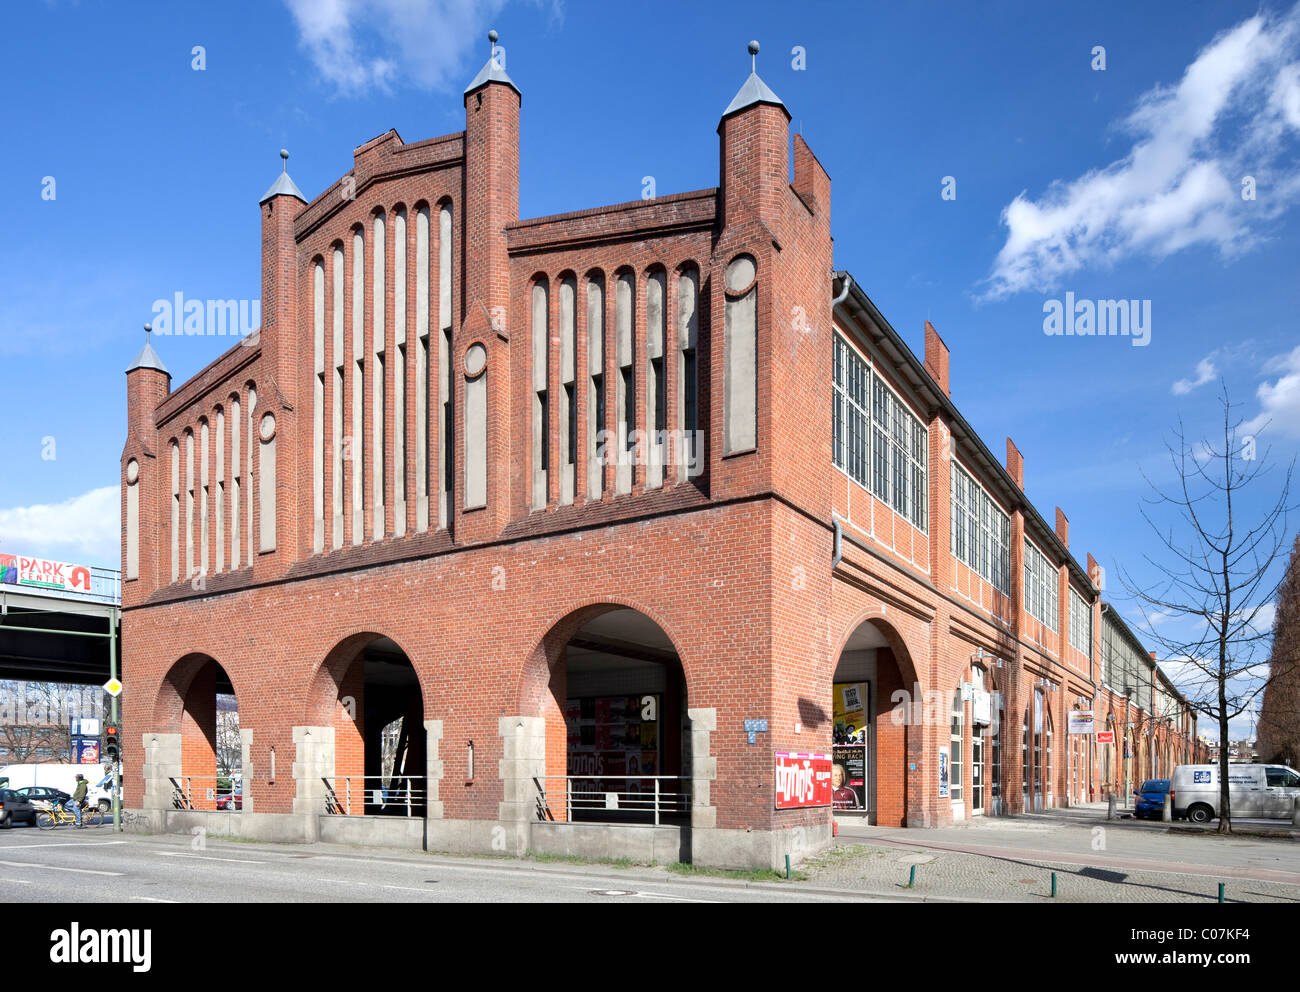 Warschauer Strasse Station, Friedrichshain, Berlin, Germany Europe Stock Photo